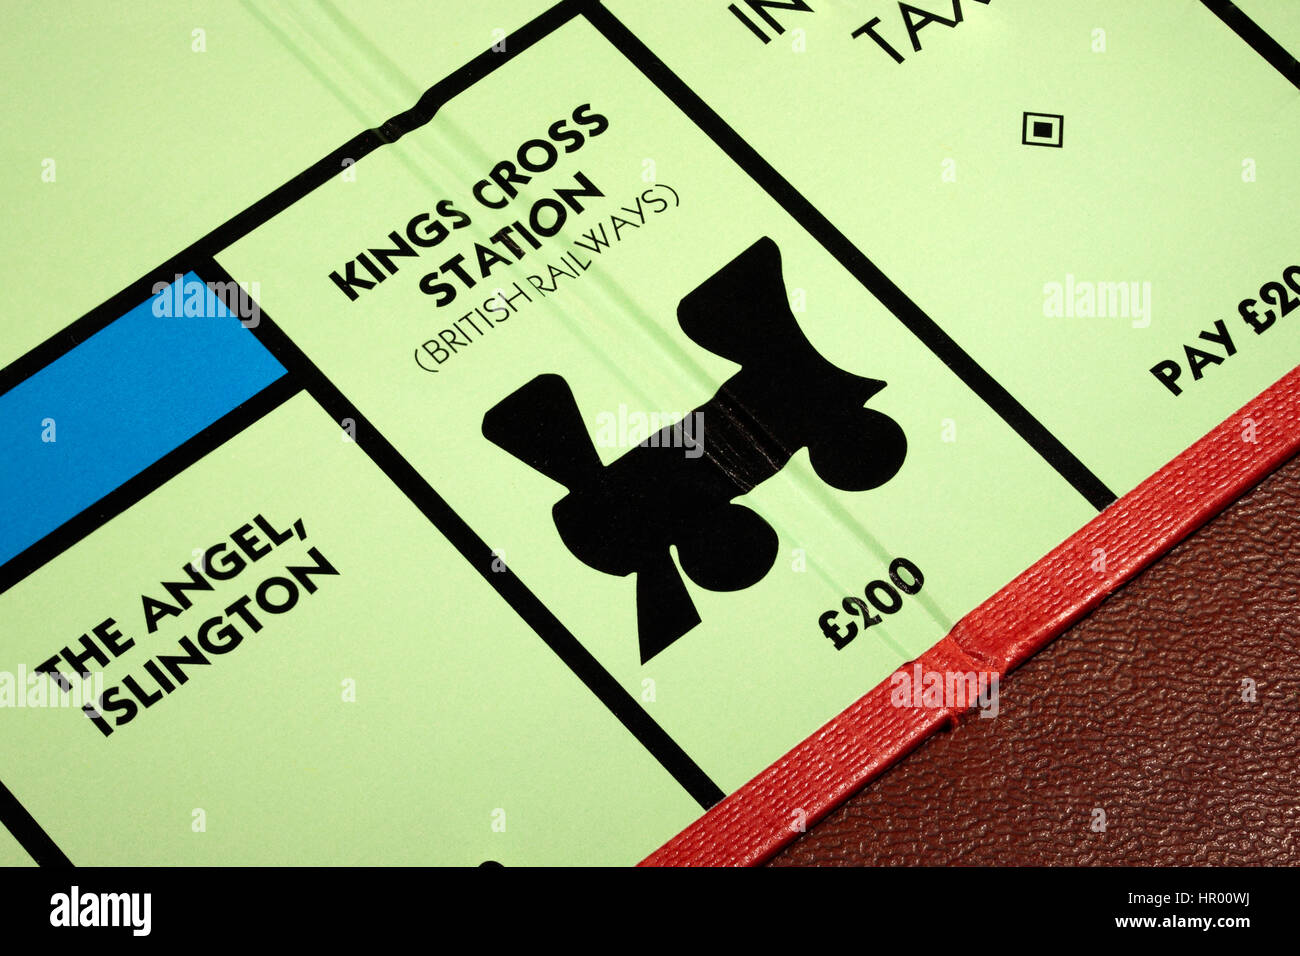 Gioco di monopoli la stazione di Kings Cross British Railways £200 con l'angelo Islington a sinistra e le imposte sul reddito pagare £200 a destra Foto Stock